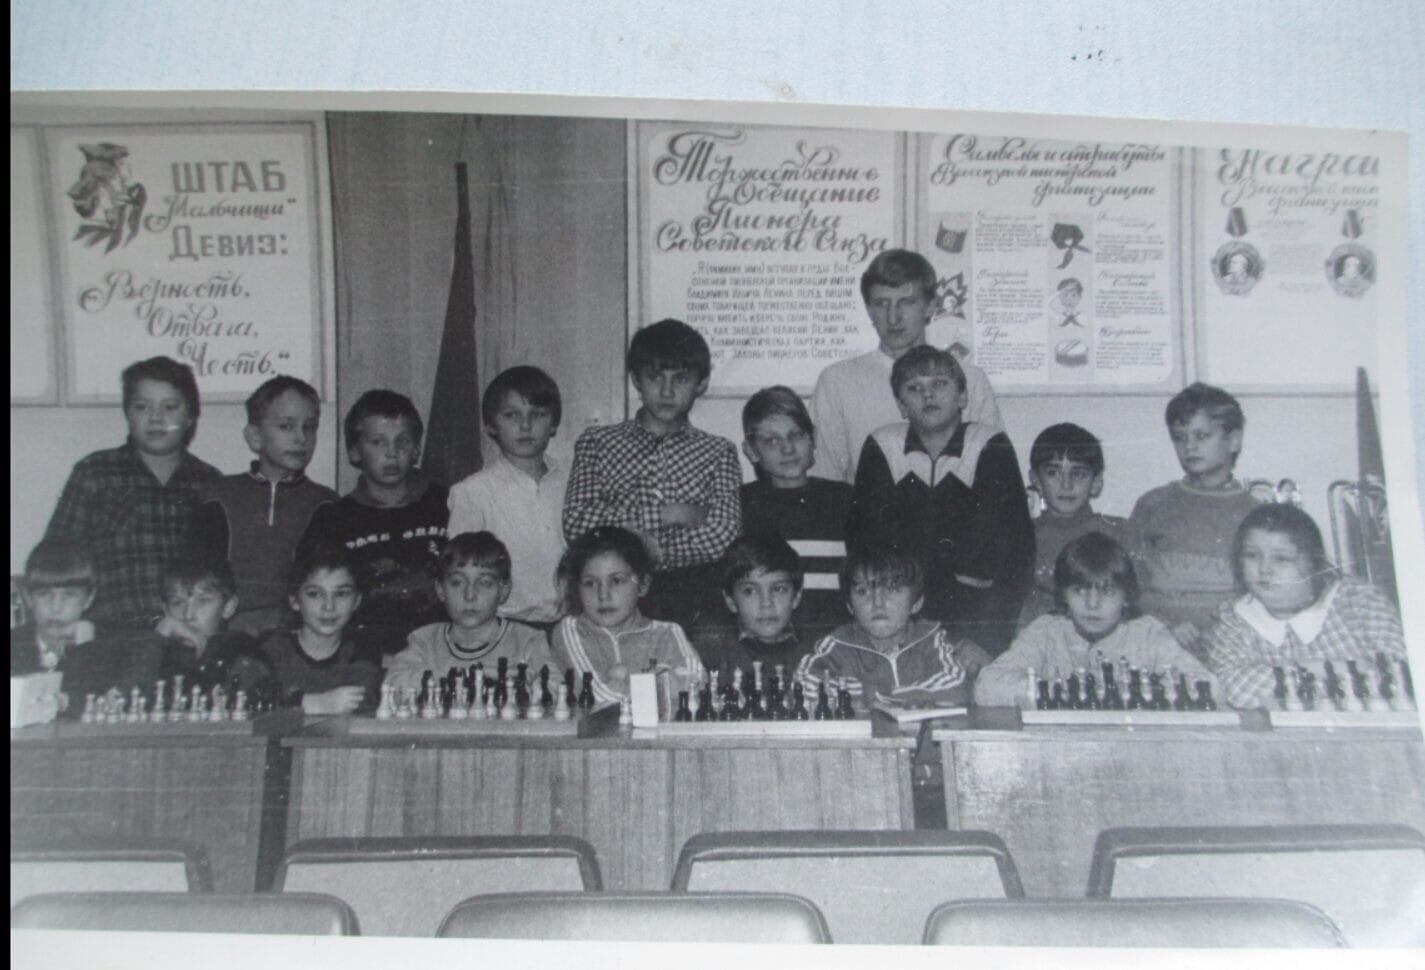 אירה טולצ&#039;ין אימרגליק &#8211; שלישית משמאל בשורה התחתונה &#8211; בחוג שחמט למתחילים של המועדון העירוני בחברבוסק, 1986